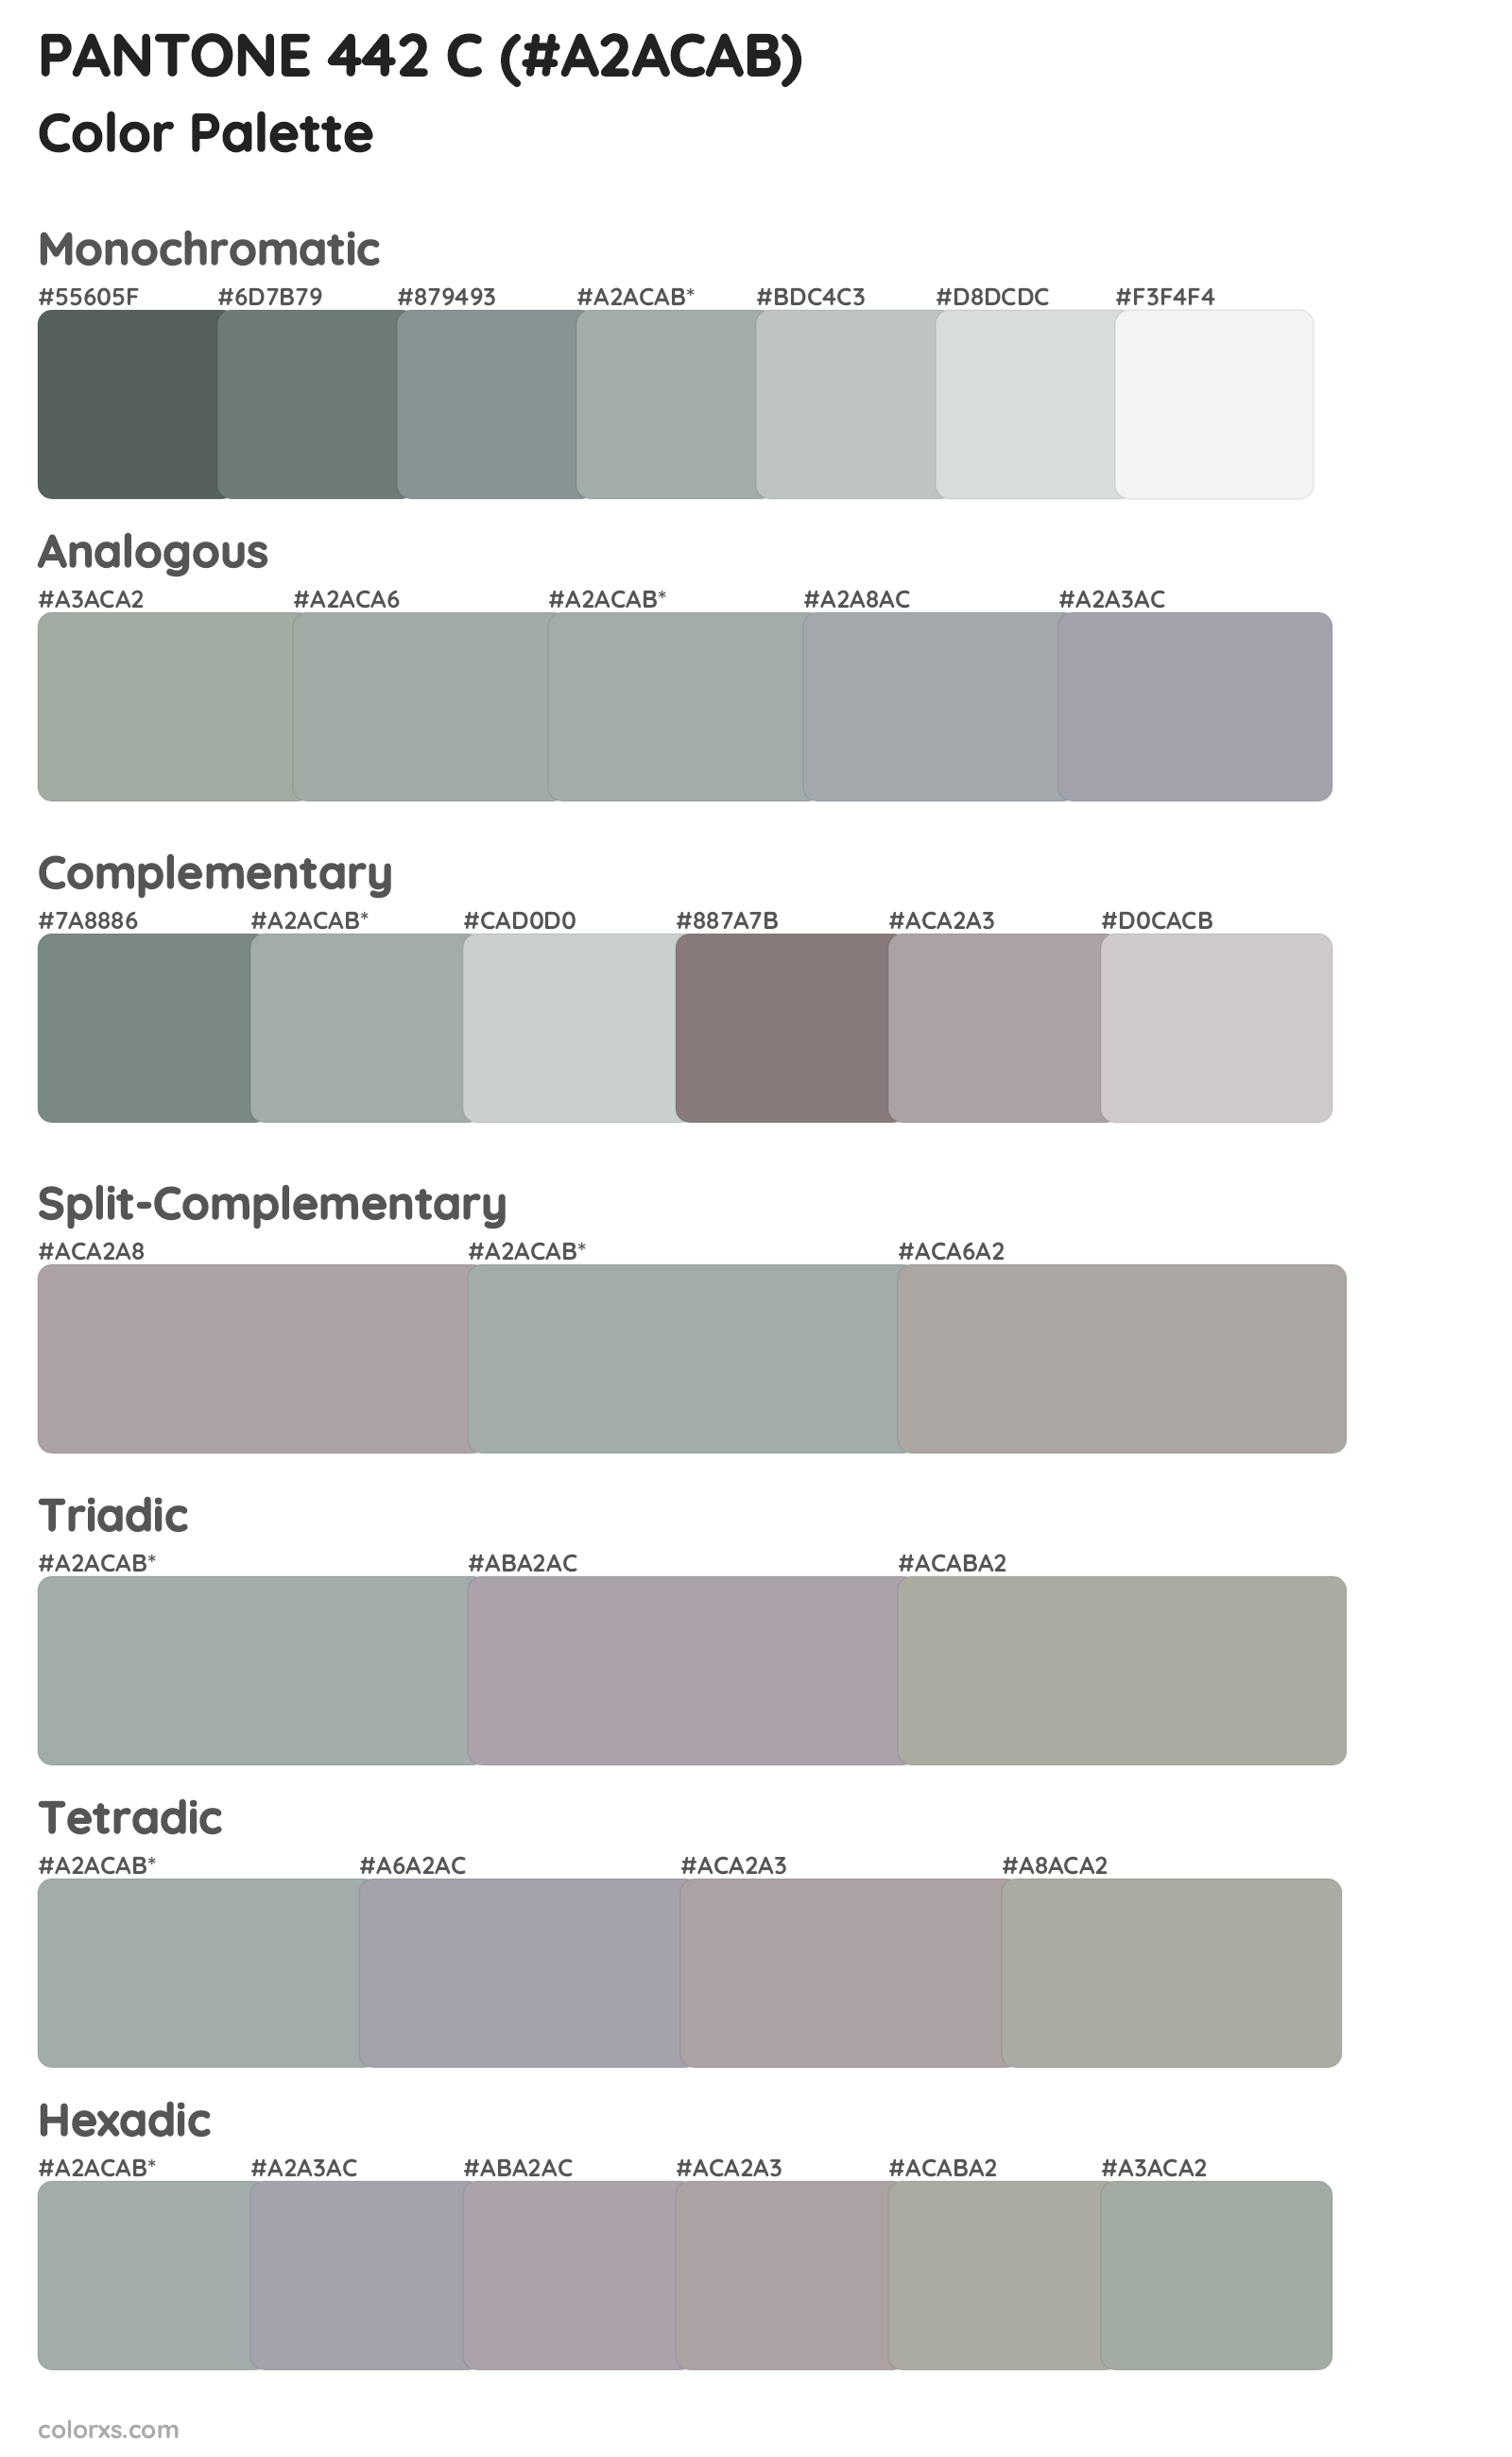 PANTONE 442 C Color Scheme Palettes